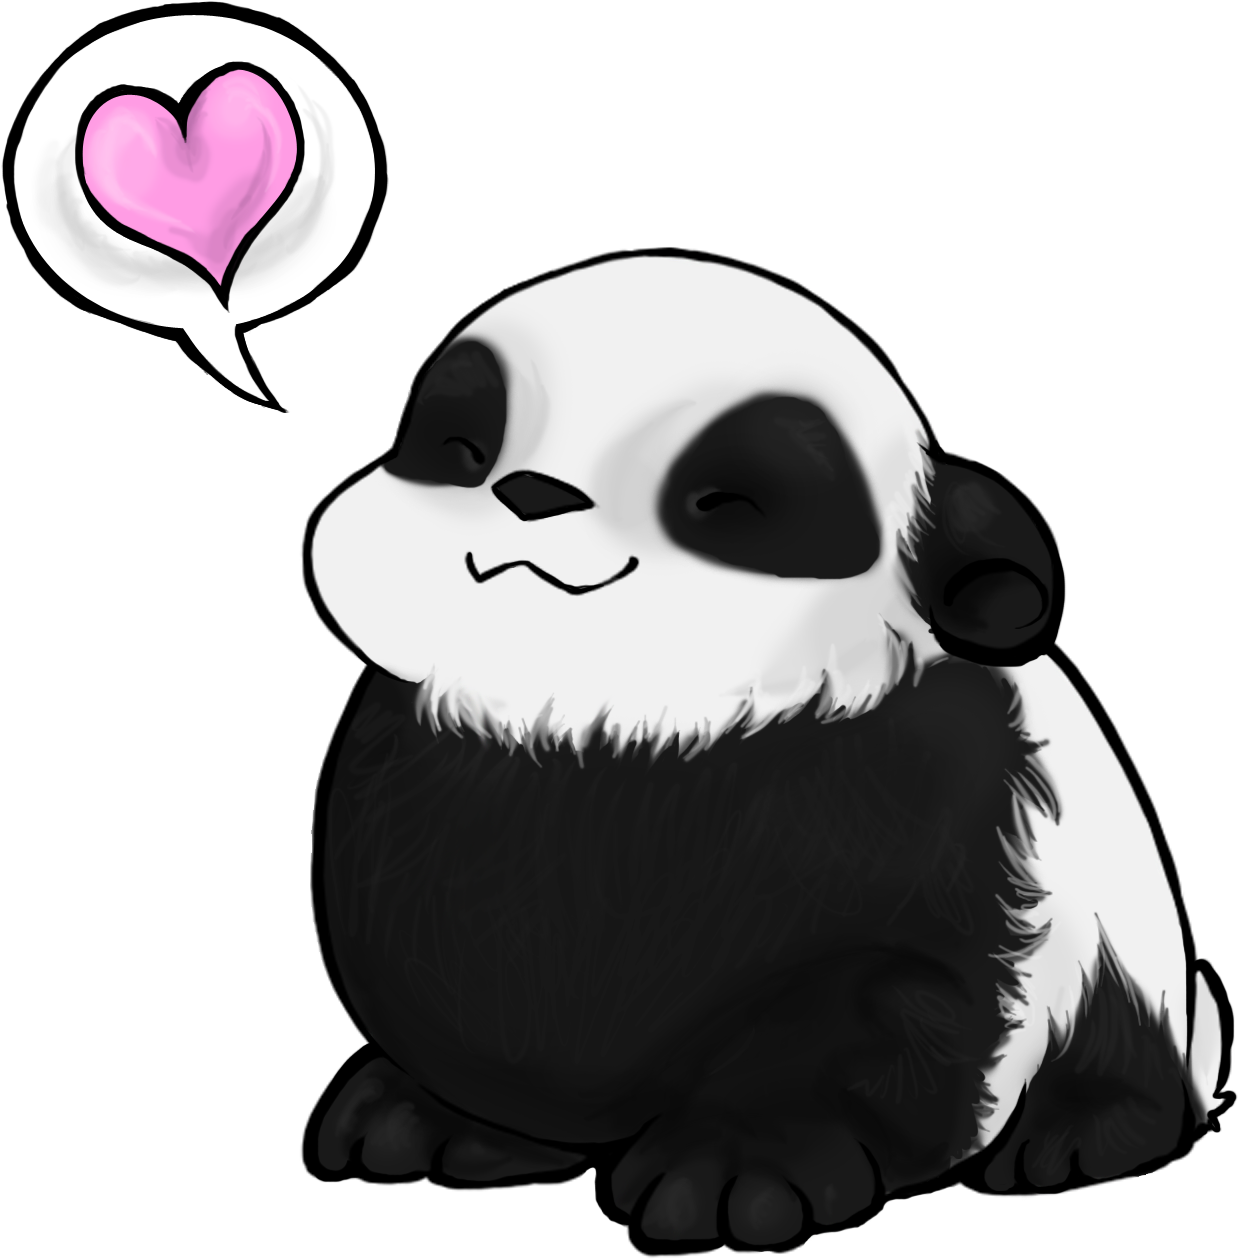 Favorite Cartoon Panda - Panda In Love Cartoon (1460x1382)